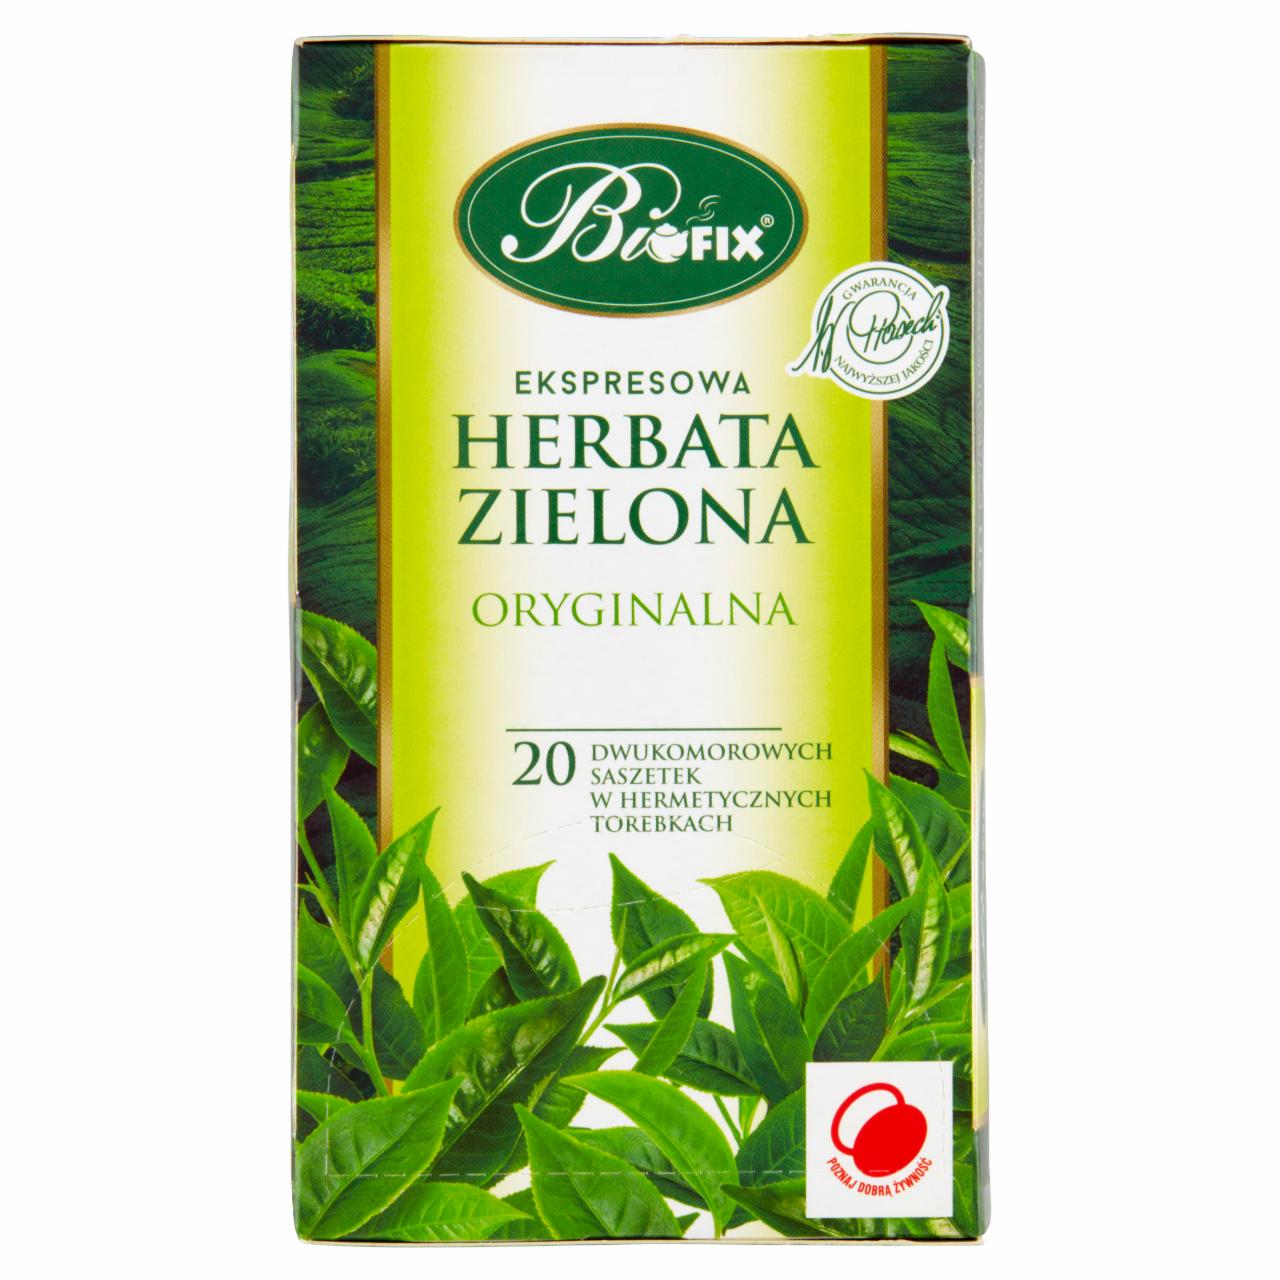 Zdjęcia - Bifix Herbata zielona ekspresowa oryginalna 40 g (20 x 2 g)